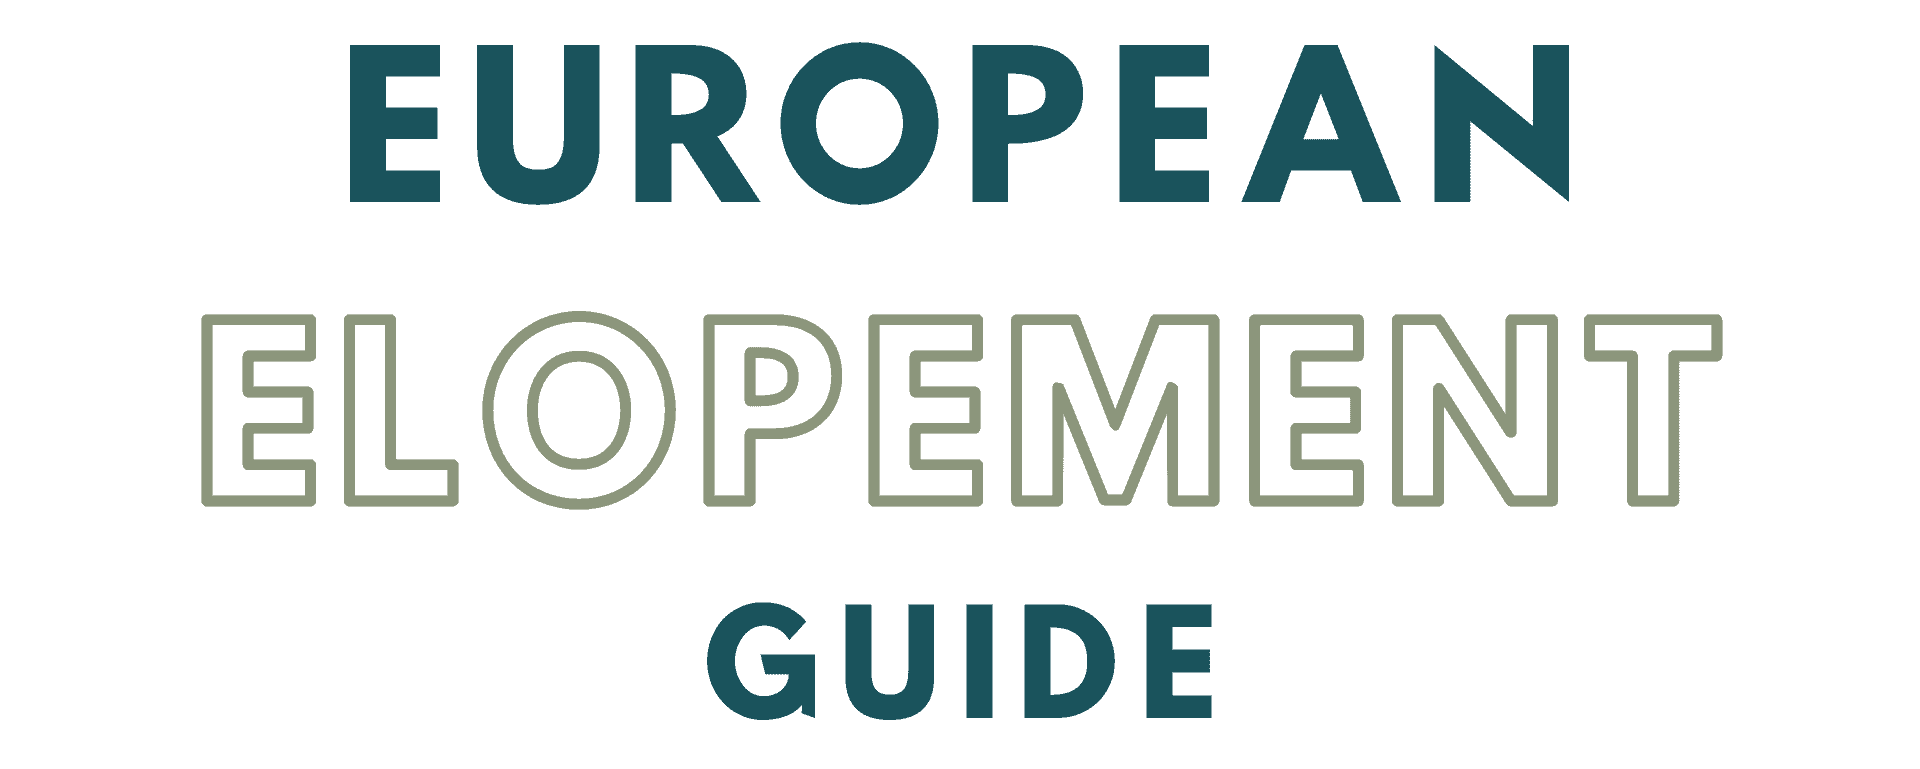 European Elopement guide logo